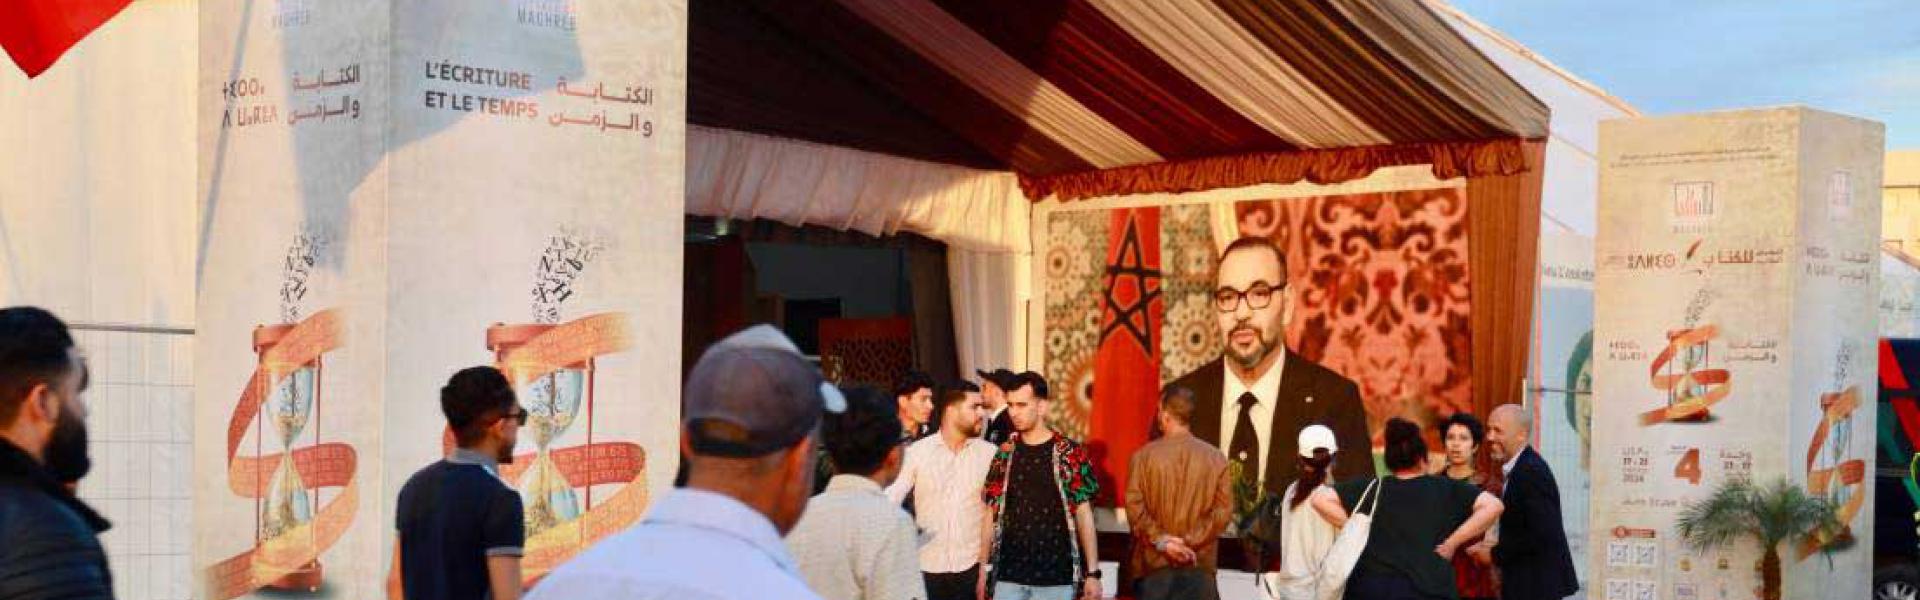 وكالة المغرب العربي للأنباء